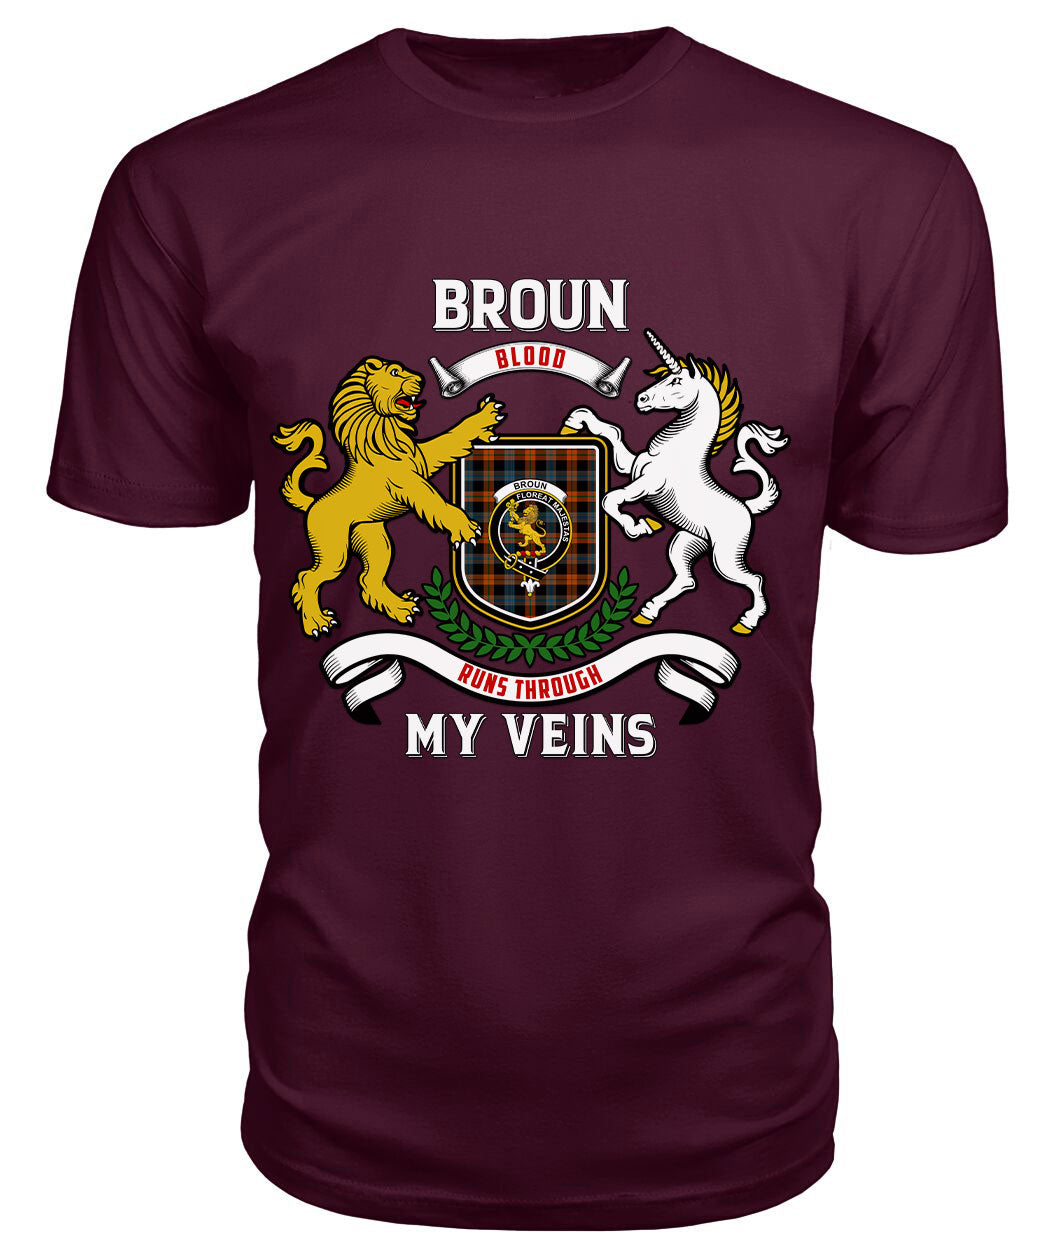 Broun Ancient Tartan Crest 2D T-shirt - Blood Runs Through My Veins Style